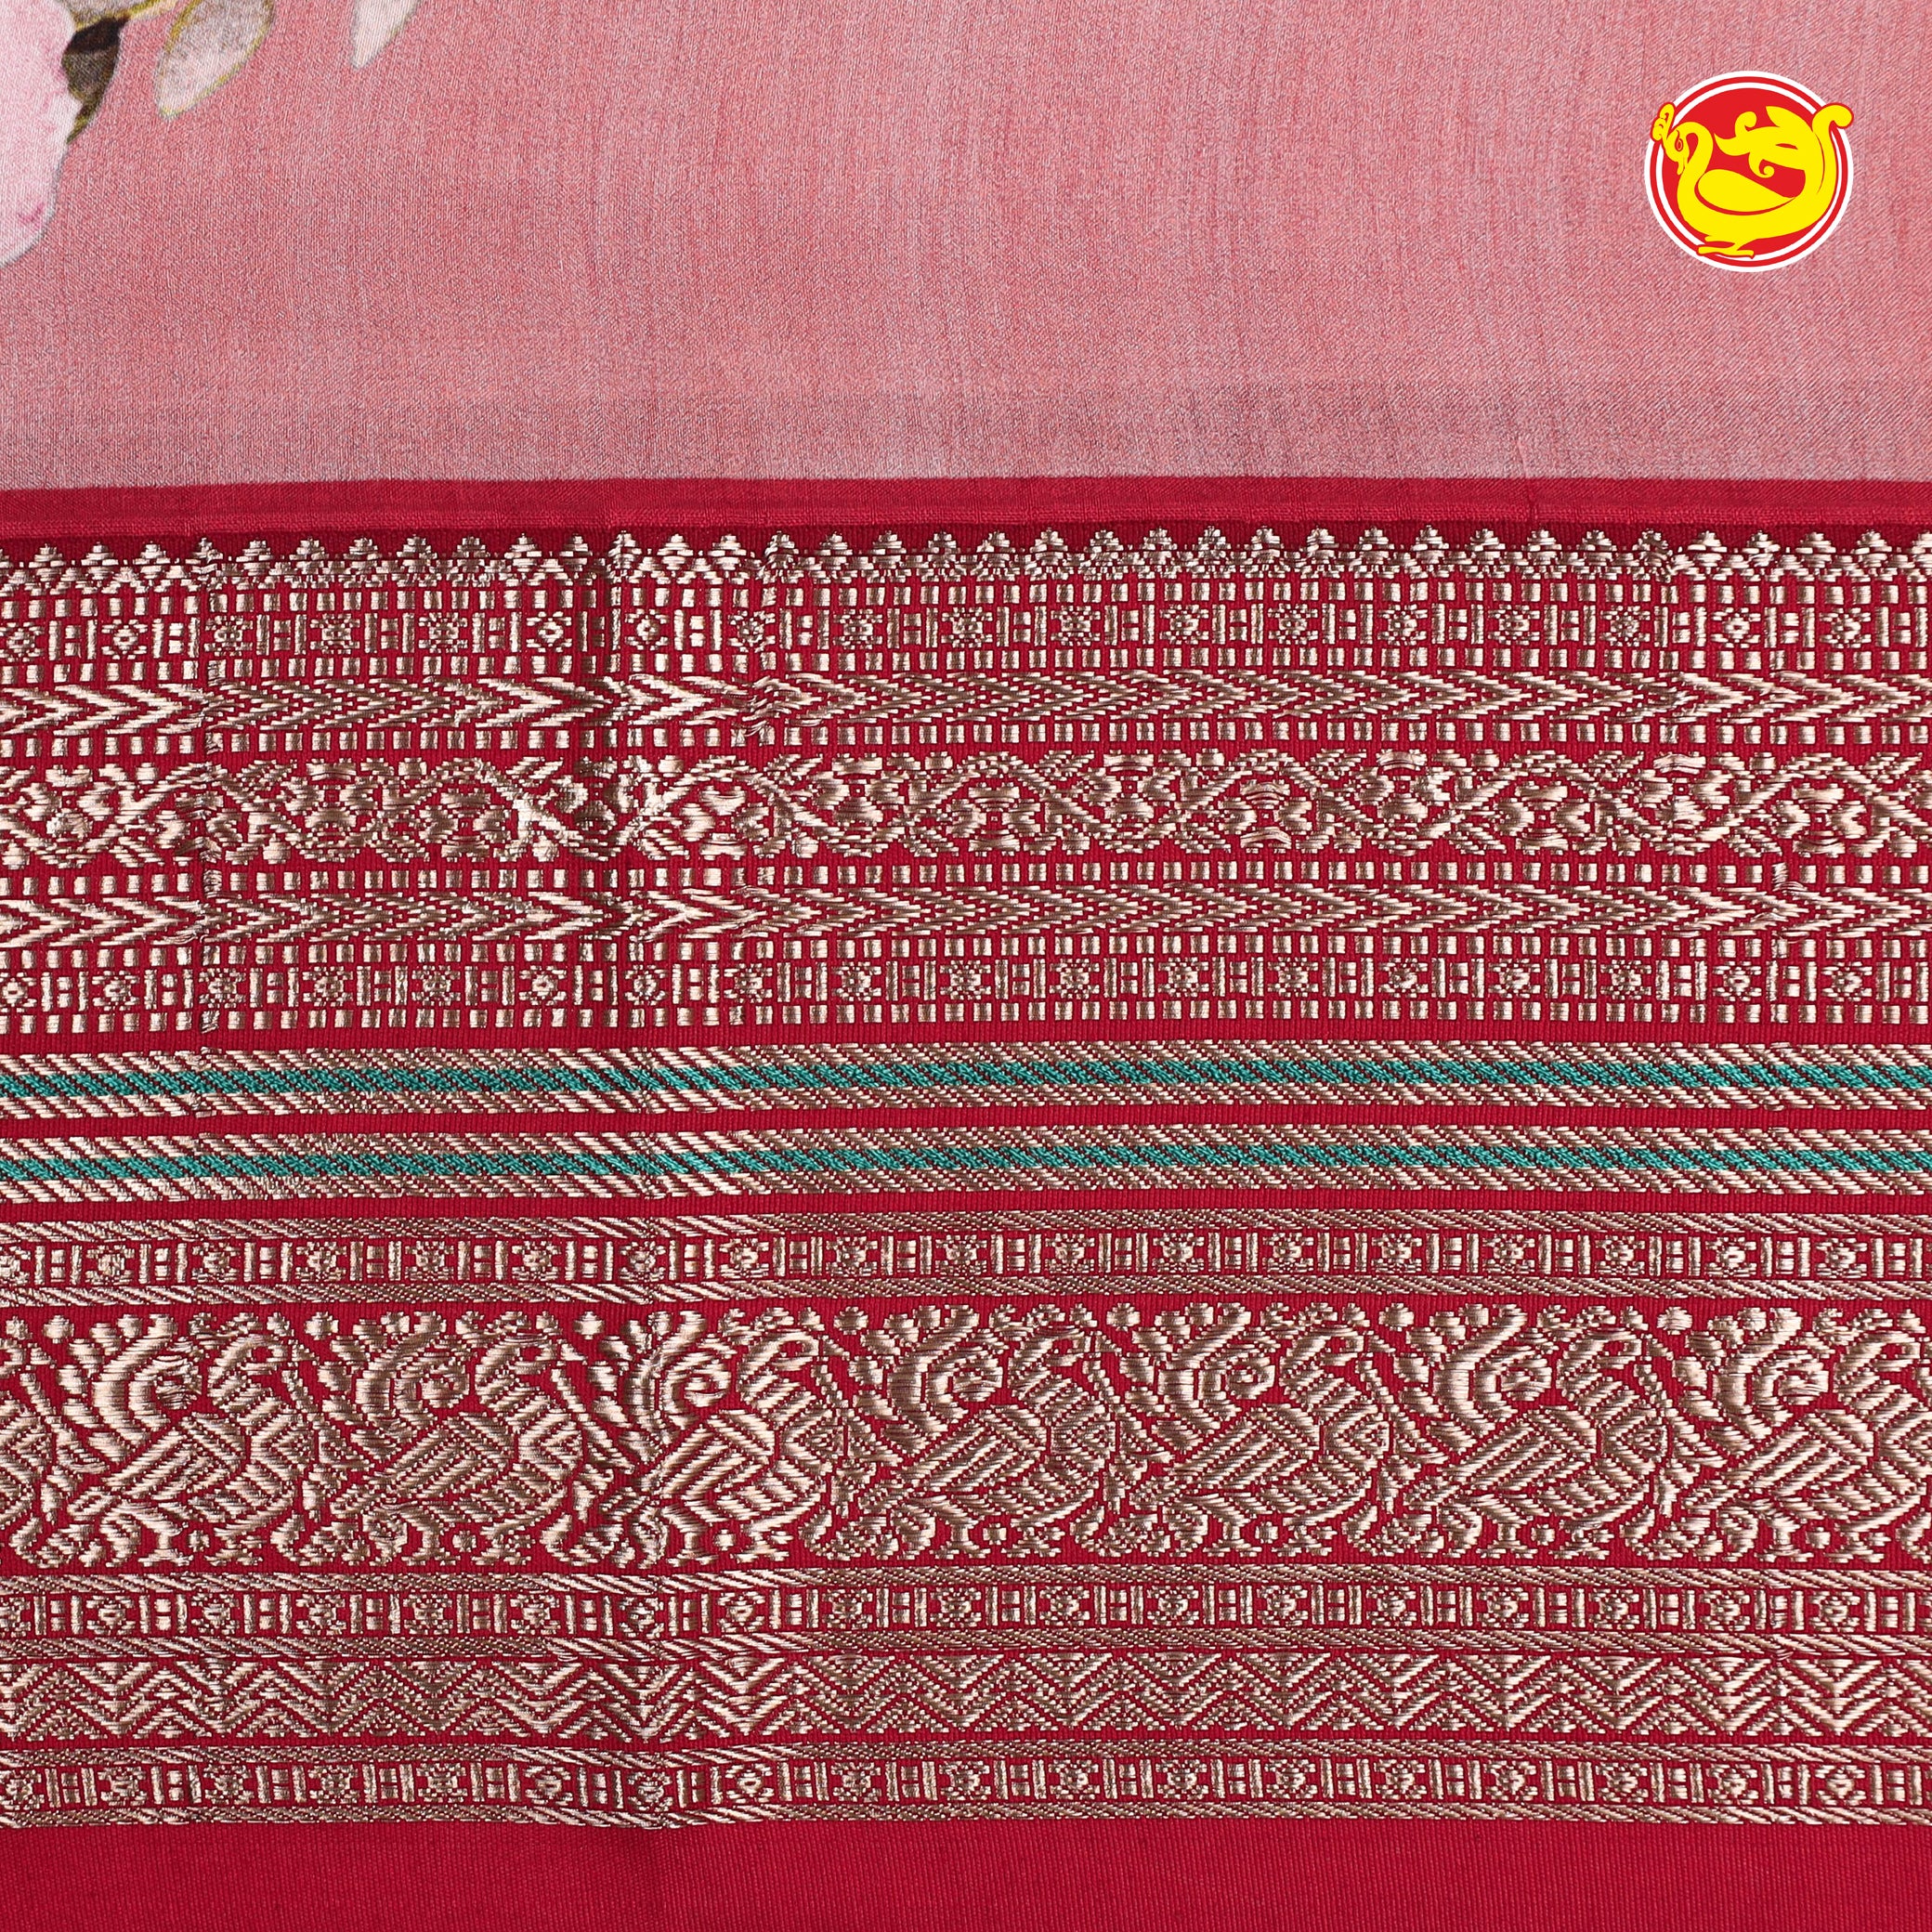 Rose digital printed pure Kanchivaram silk saree